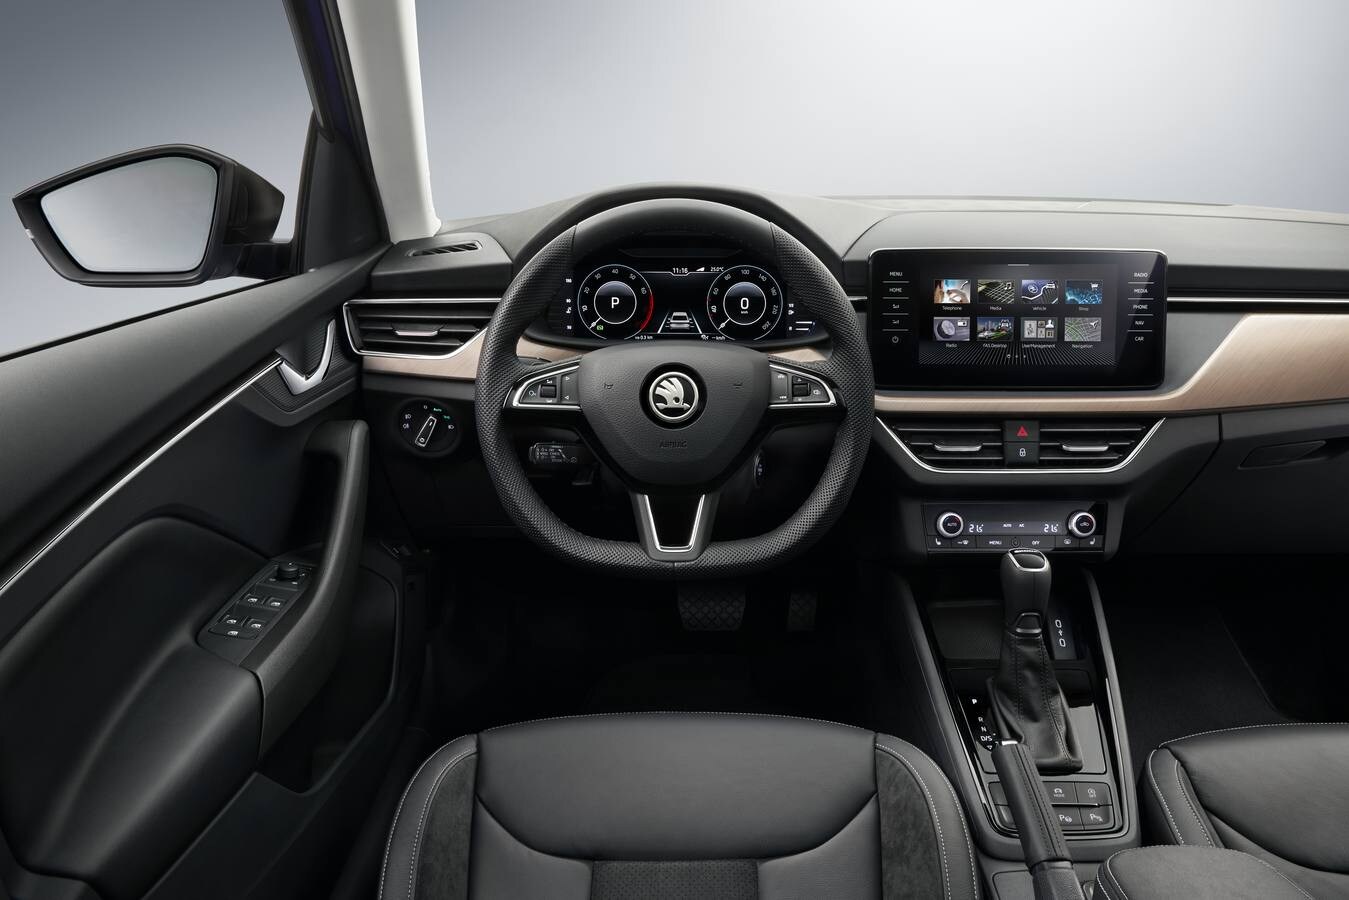 El Scala es una apuesta importante de Skoda. Engloba diseño, con la mecánica del grupo Volkswagen y la habitual funcionalidad, amplitud y relación calidad precio de la marca. Arranca desde 13.990 euros. 